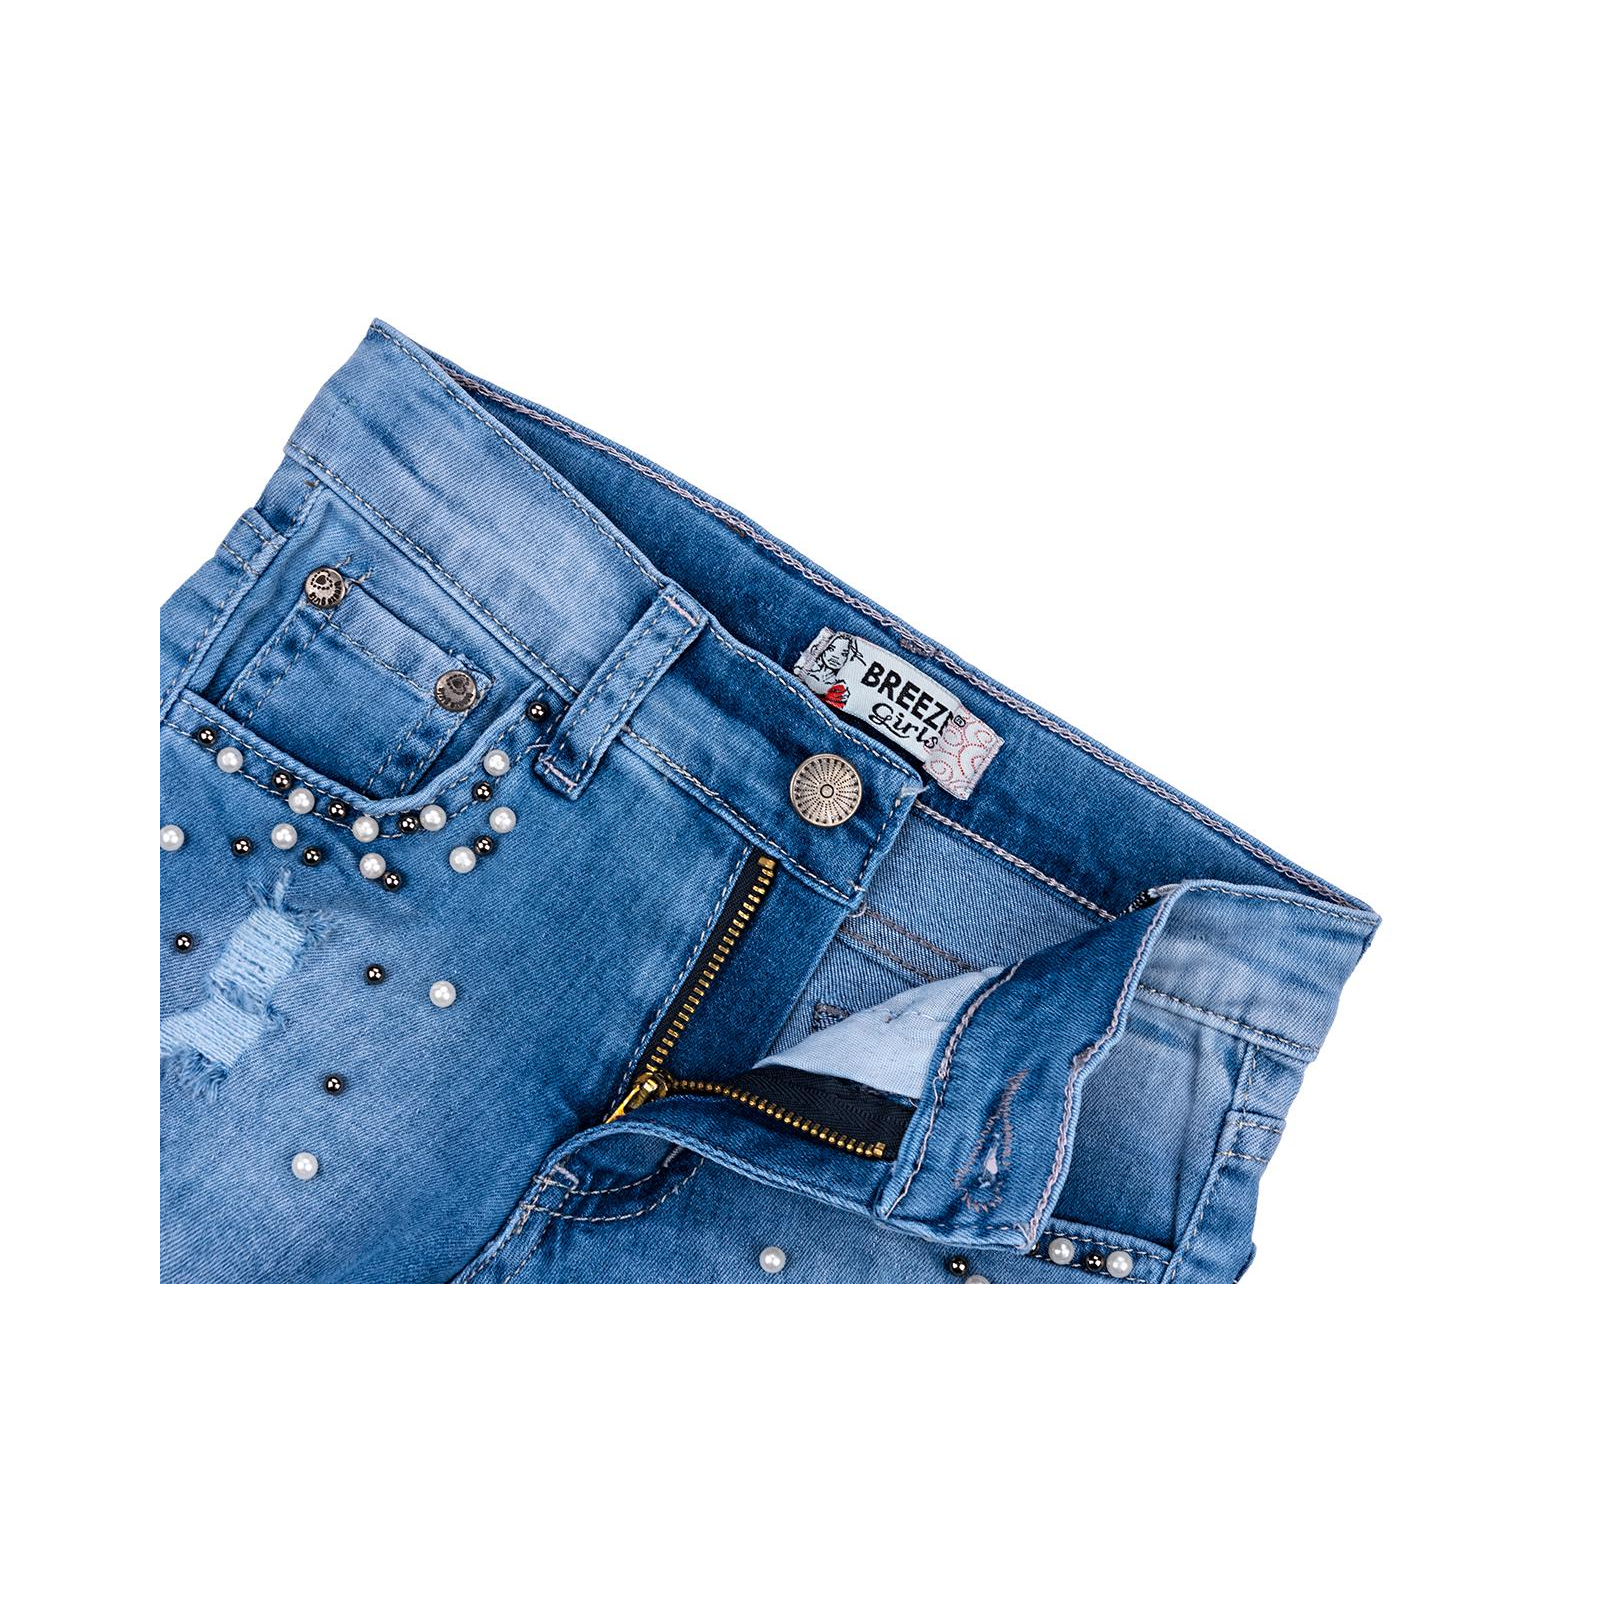 Шорты Breeze джинсовые с бусинами (20139-134G-blue) изображение 3